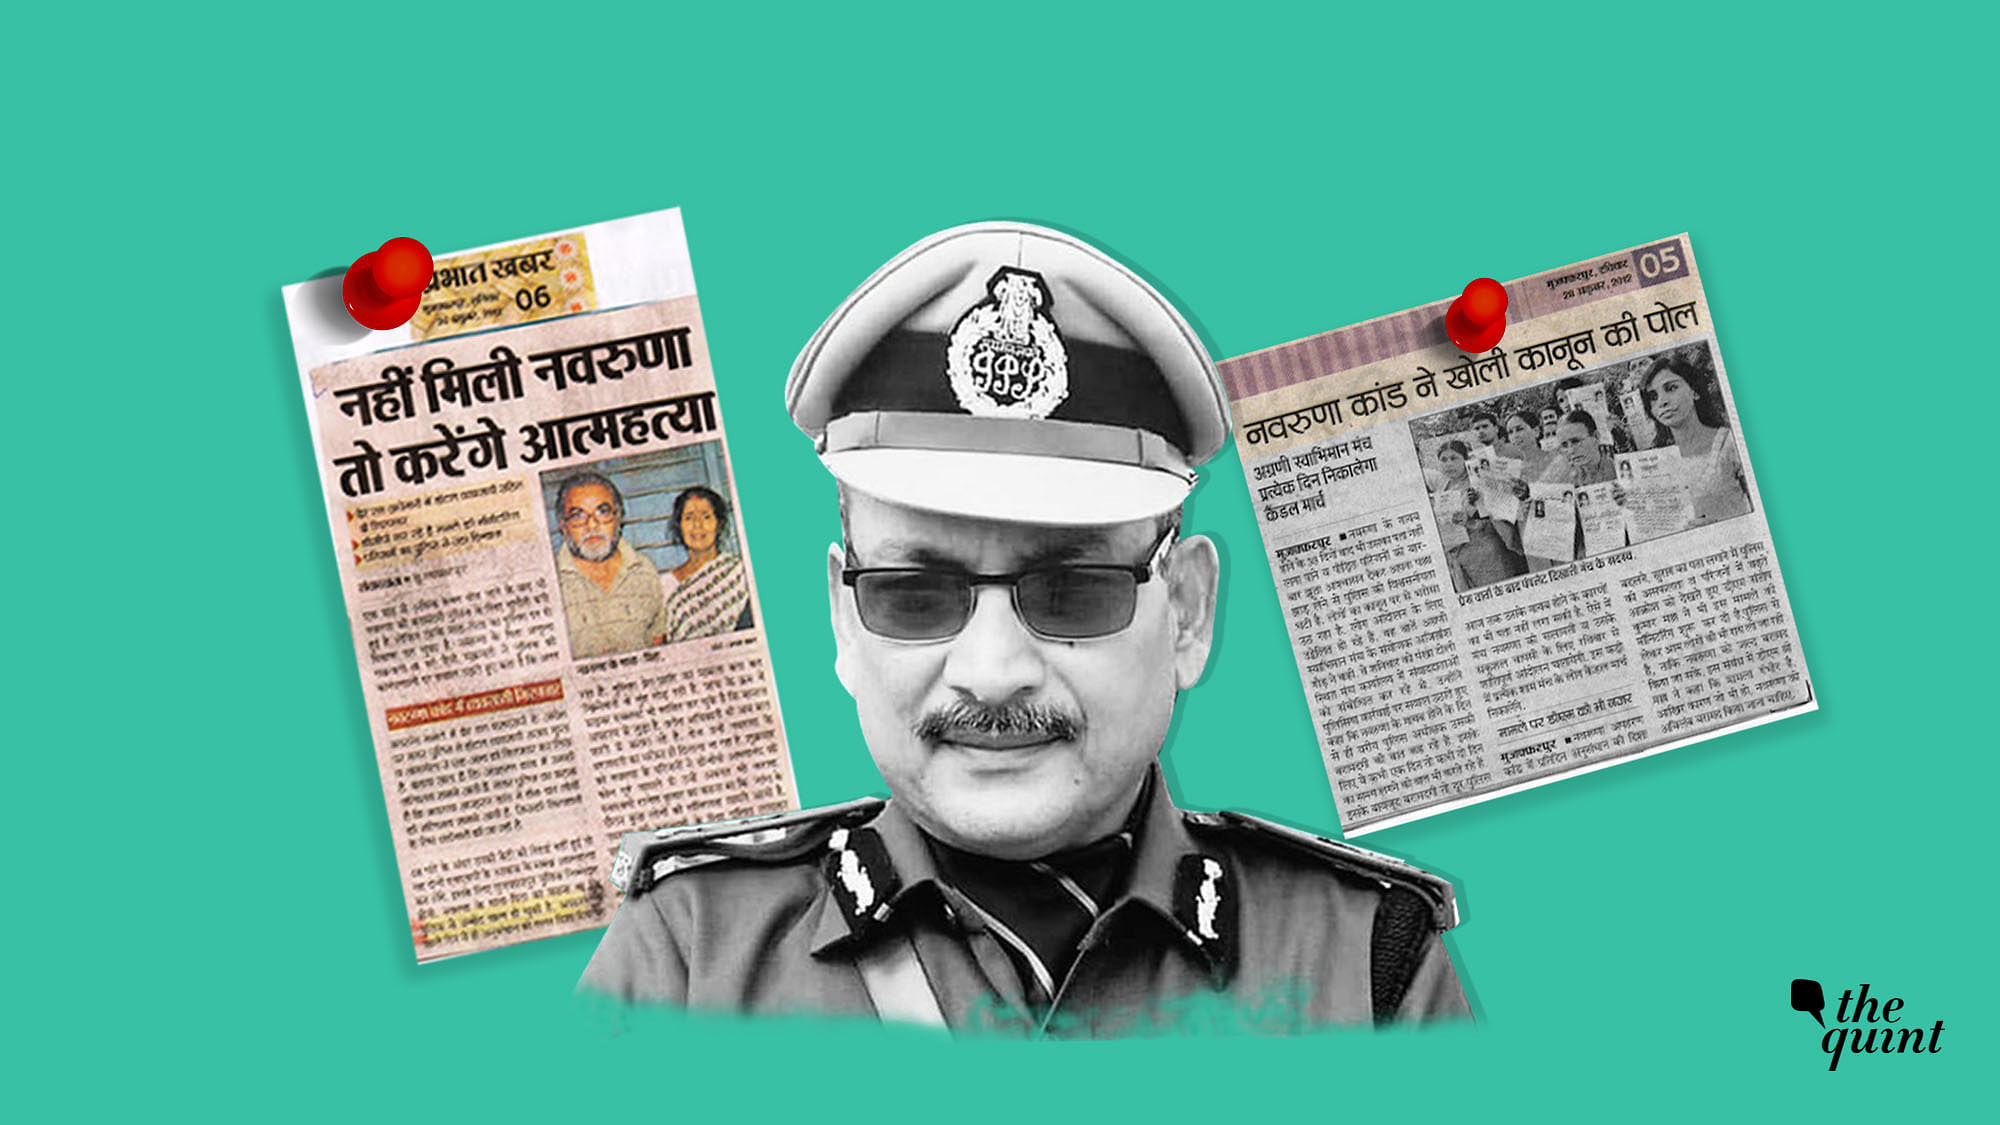 31 जनवरी से बिहार पुलिस महकमे का कार्यभार संभाल चुके नए डीजीपी गुप्तेश्वर पांडेय नवरुणा केस को लेकर सुर्खियों में आए थे.